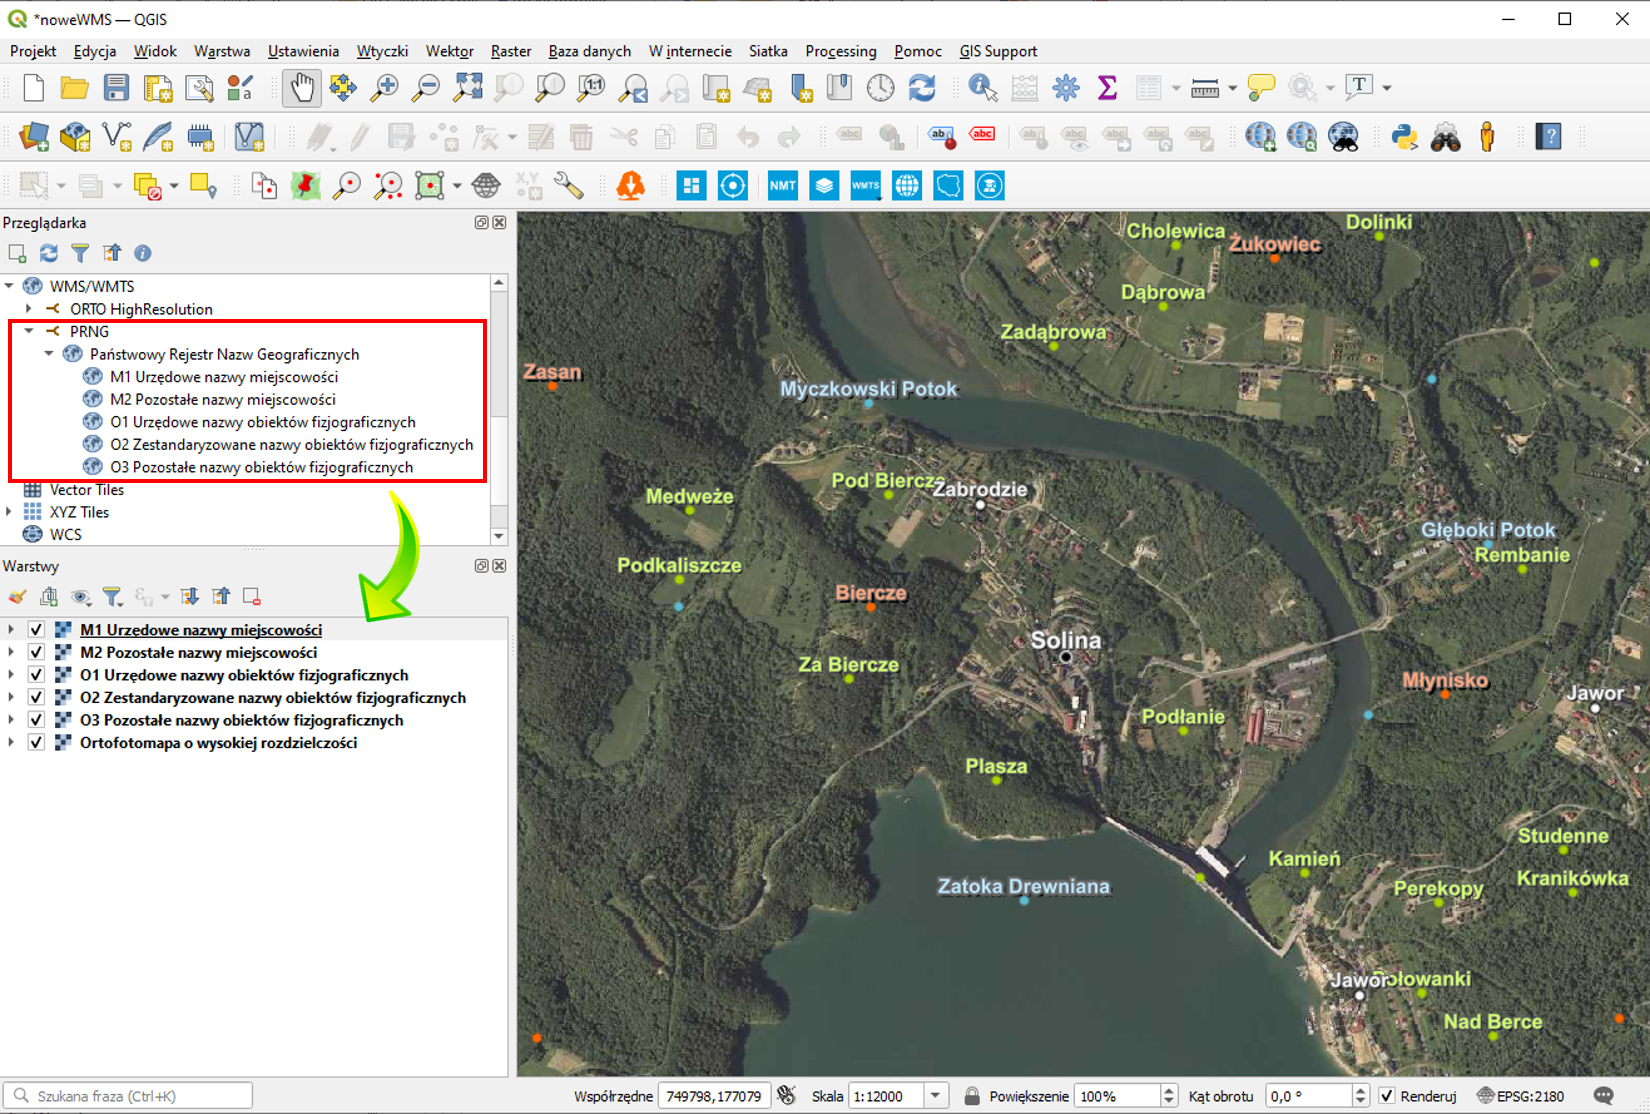 Ilustracja przedstawia zrzut ekranu z aplikacji QGIS z fragmentem ortofotomapy oraz nazwami obiektów geograficznych okolic miejscowości Solina w postaci usługi przeglądania WMS. Po lewej stronie ilustracji, znajduje się okno przeglądarki danych (usługa przeglądania WMS danych PRNG zaznaczona czerwonym prostokątem) oraz warstw mapy (wskazane strzałką)